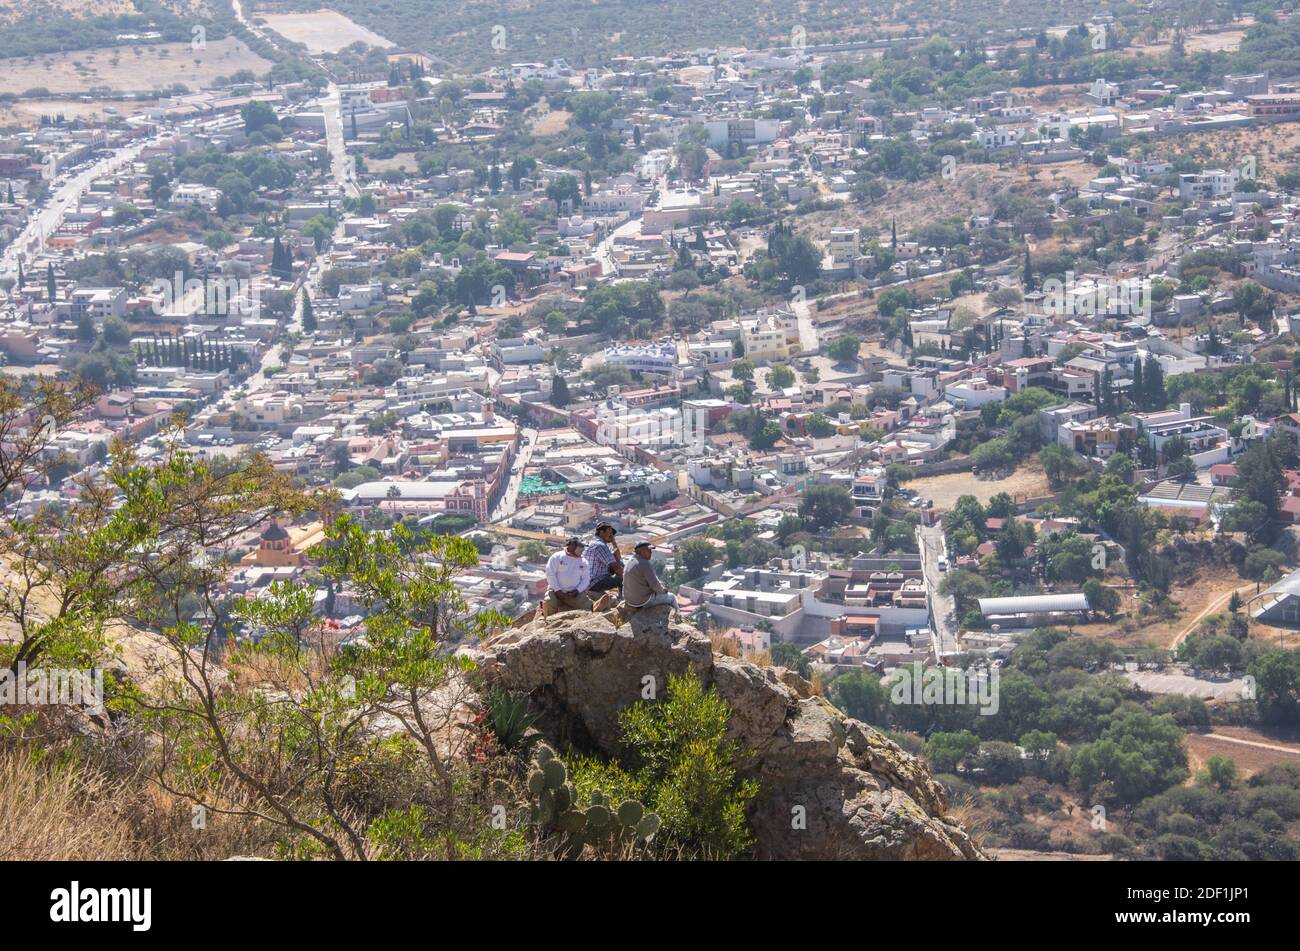 La vue de Peña de Bernal, site de l'UNESCO et l'un des plus grands monolithes du monde, Queretaro, Mexique Banque D'Images